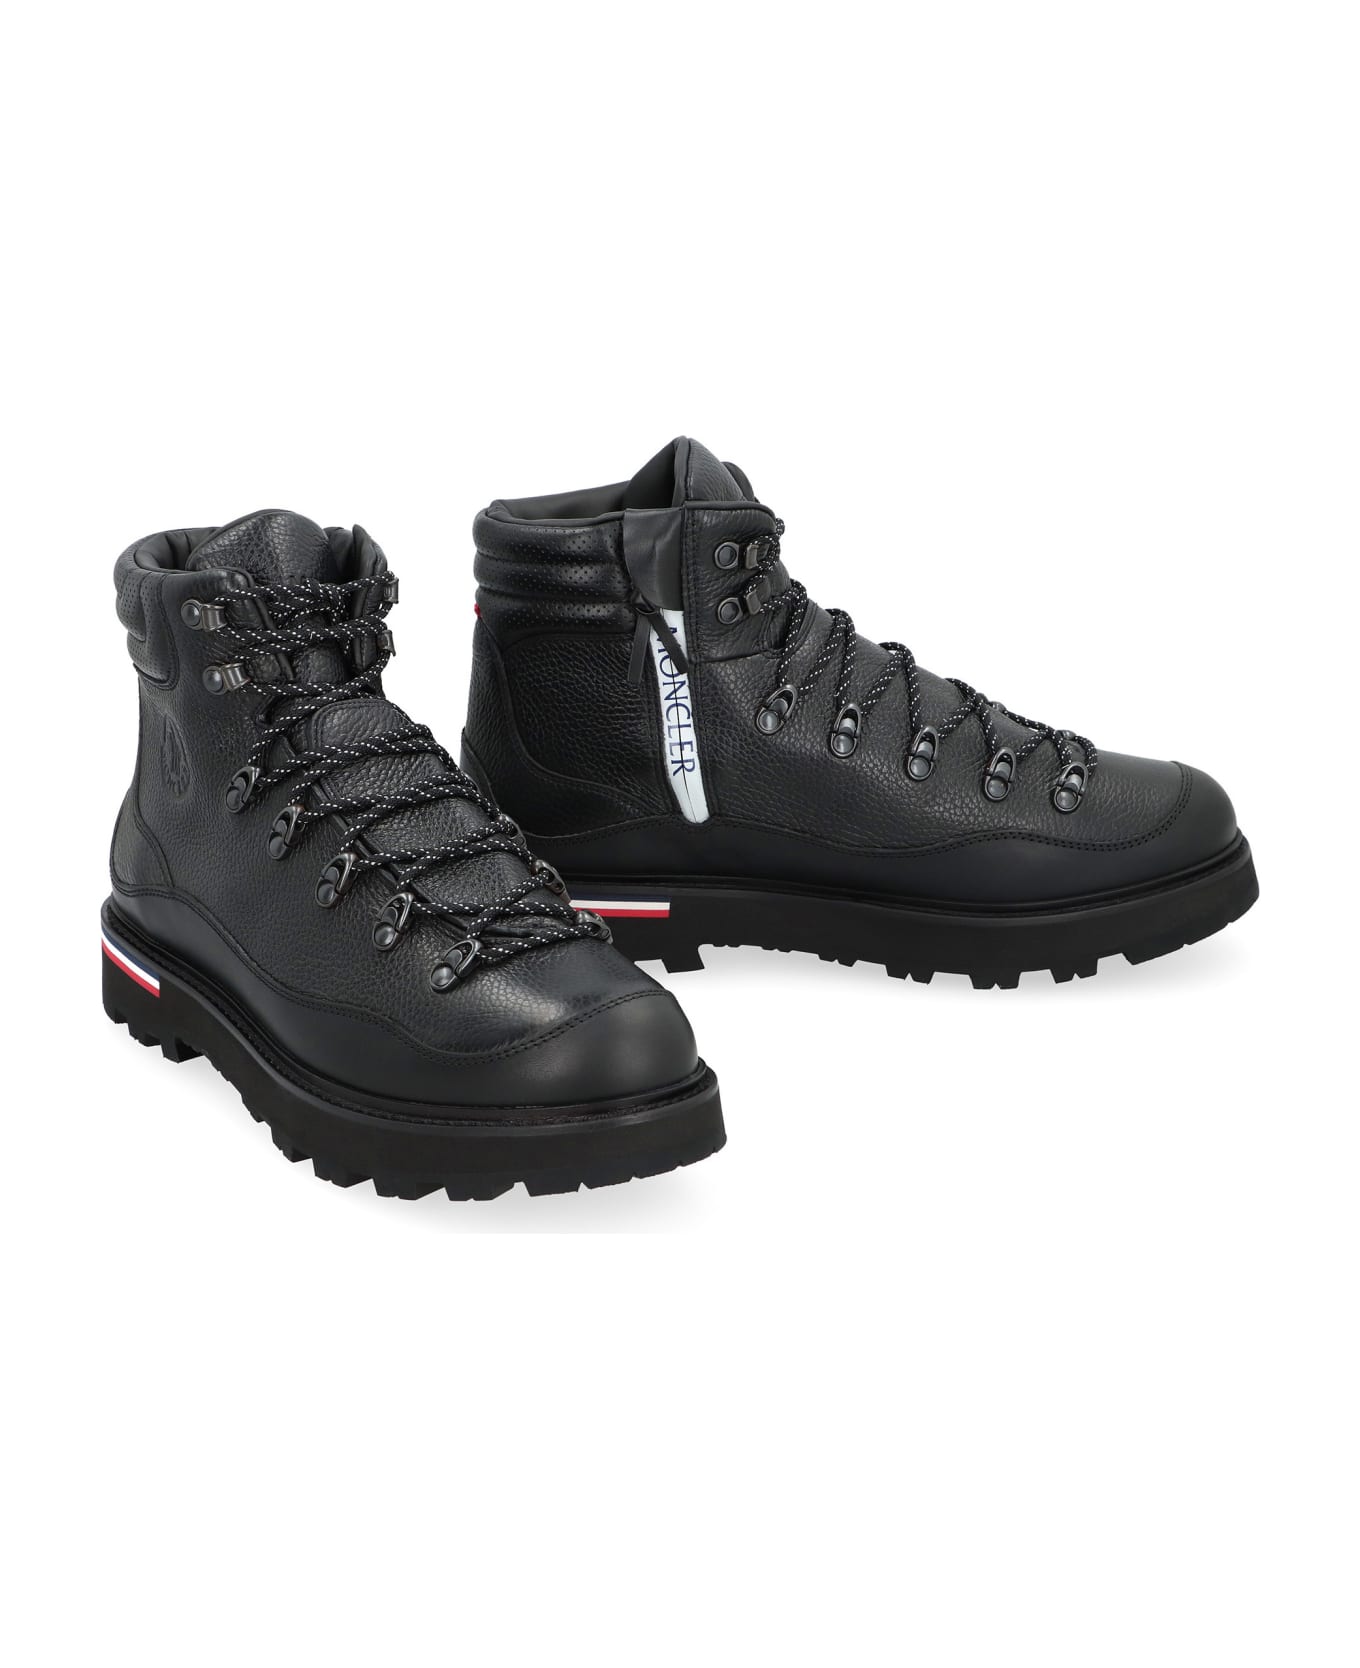 Moncler Paka Hiking Boots - black